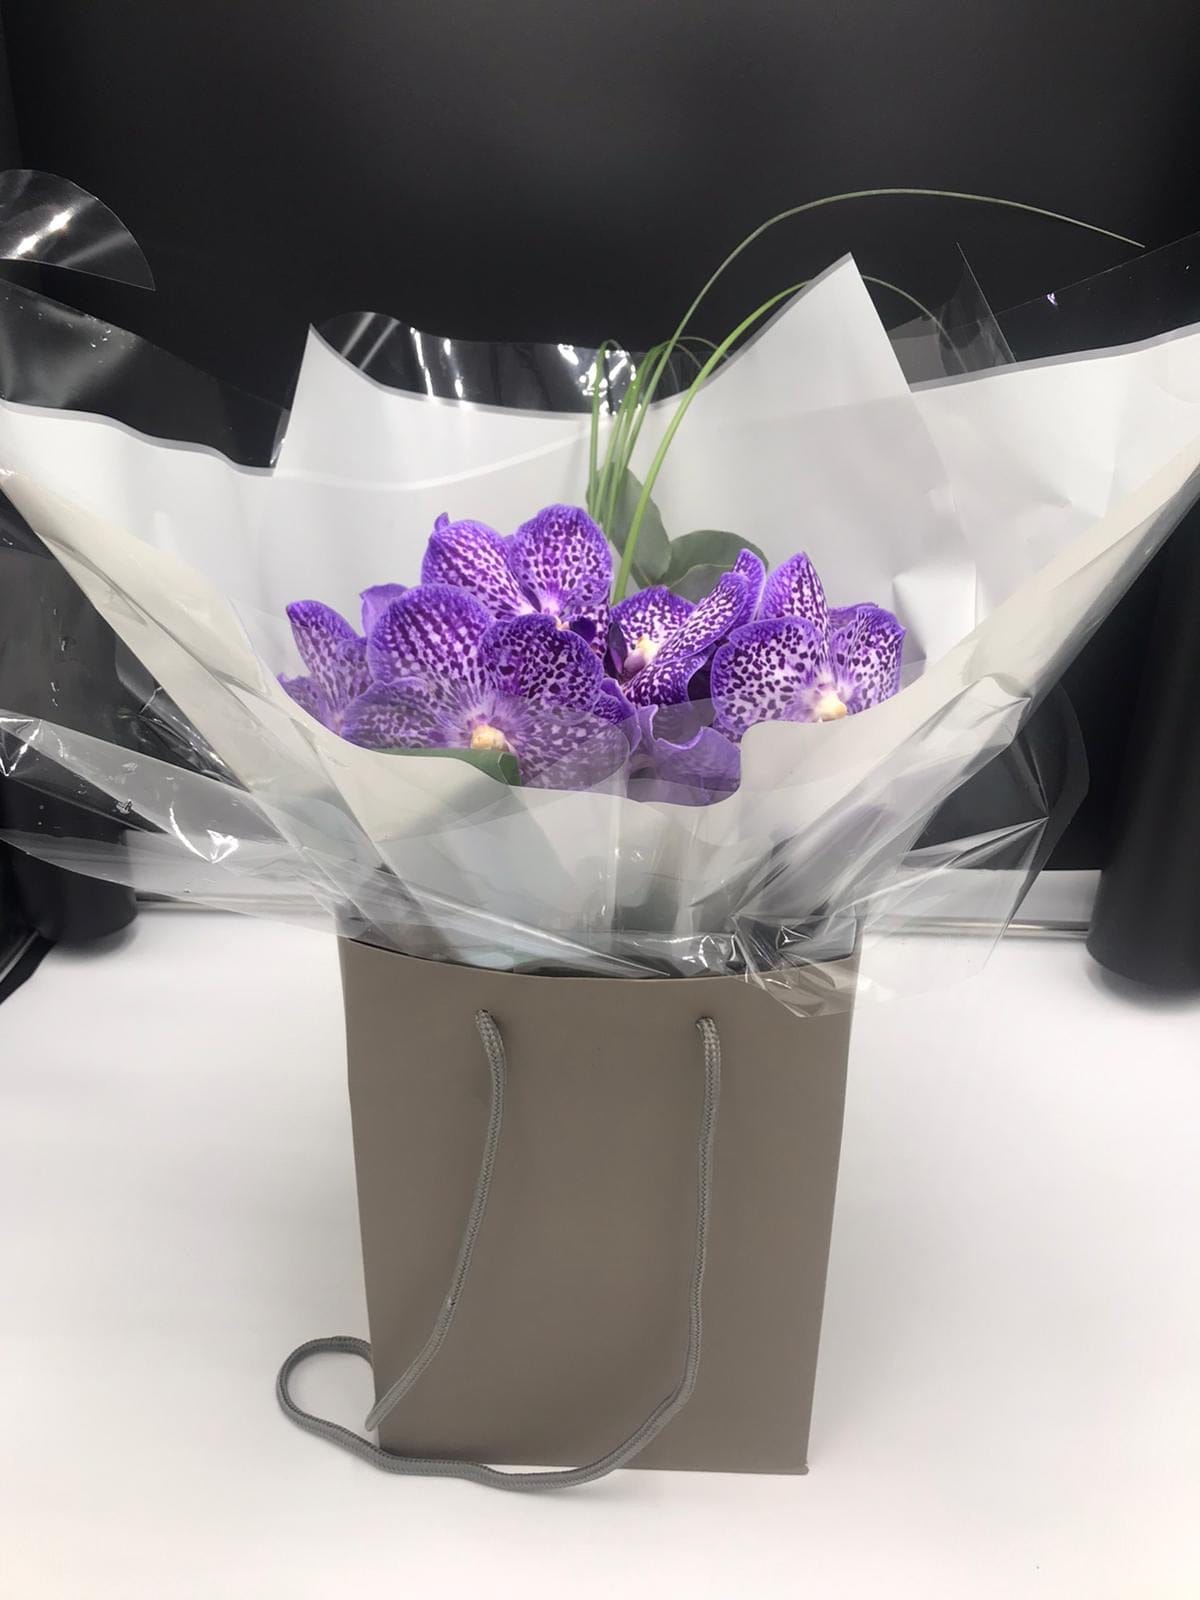 Vanda orchid bouquet - Harrys Flowers London